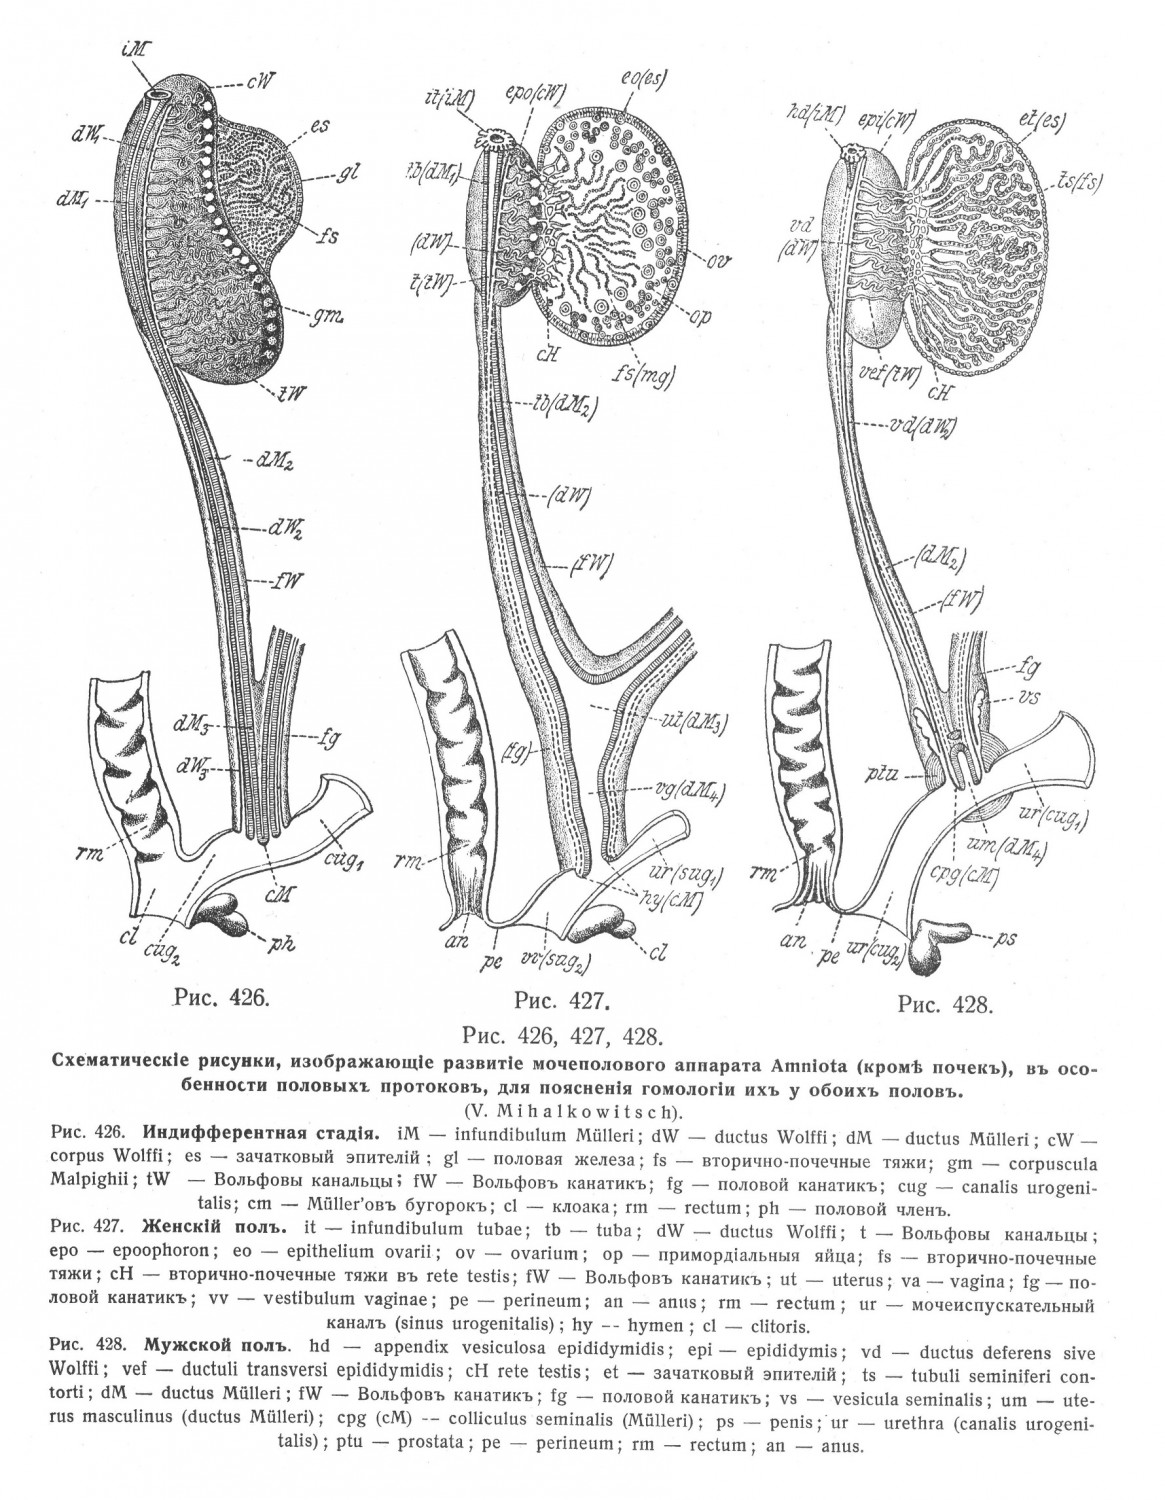 Descensus ovariorum et testiculorum